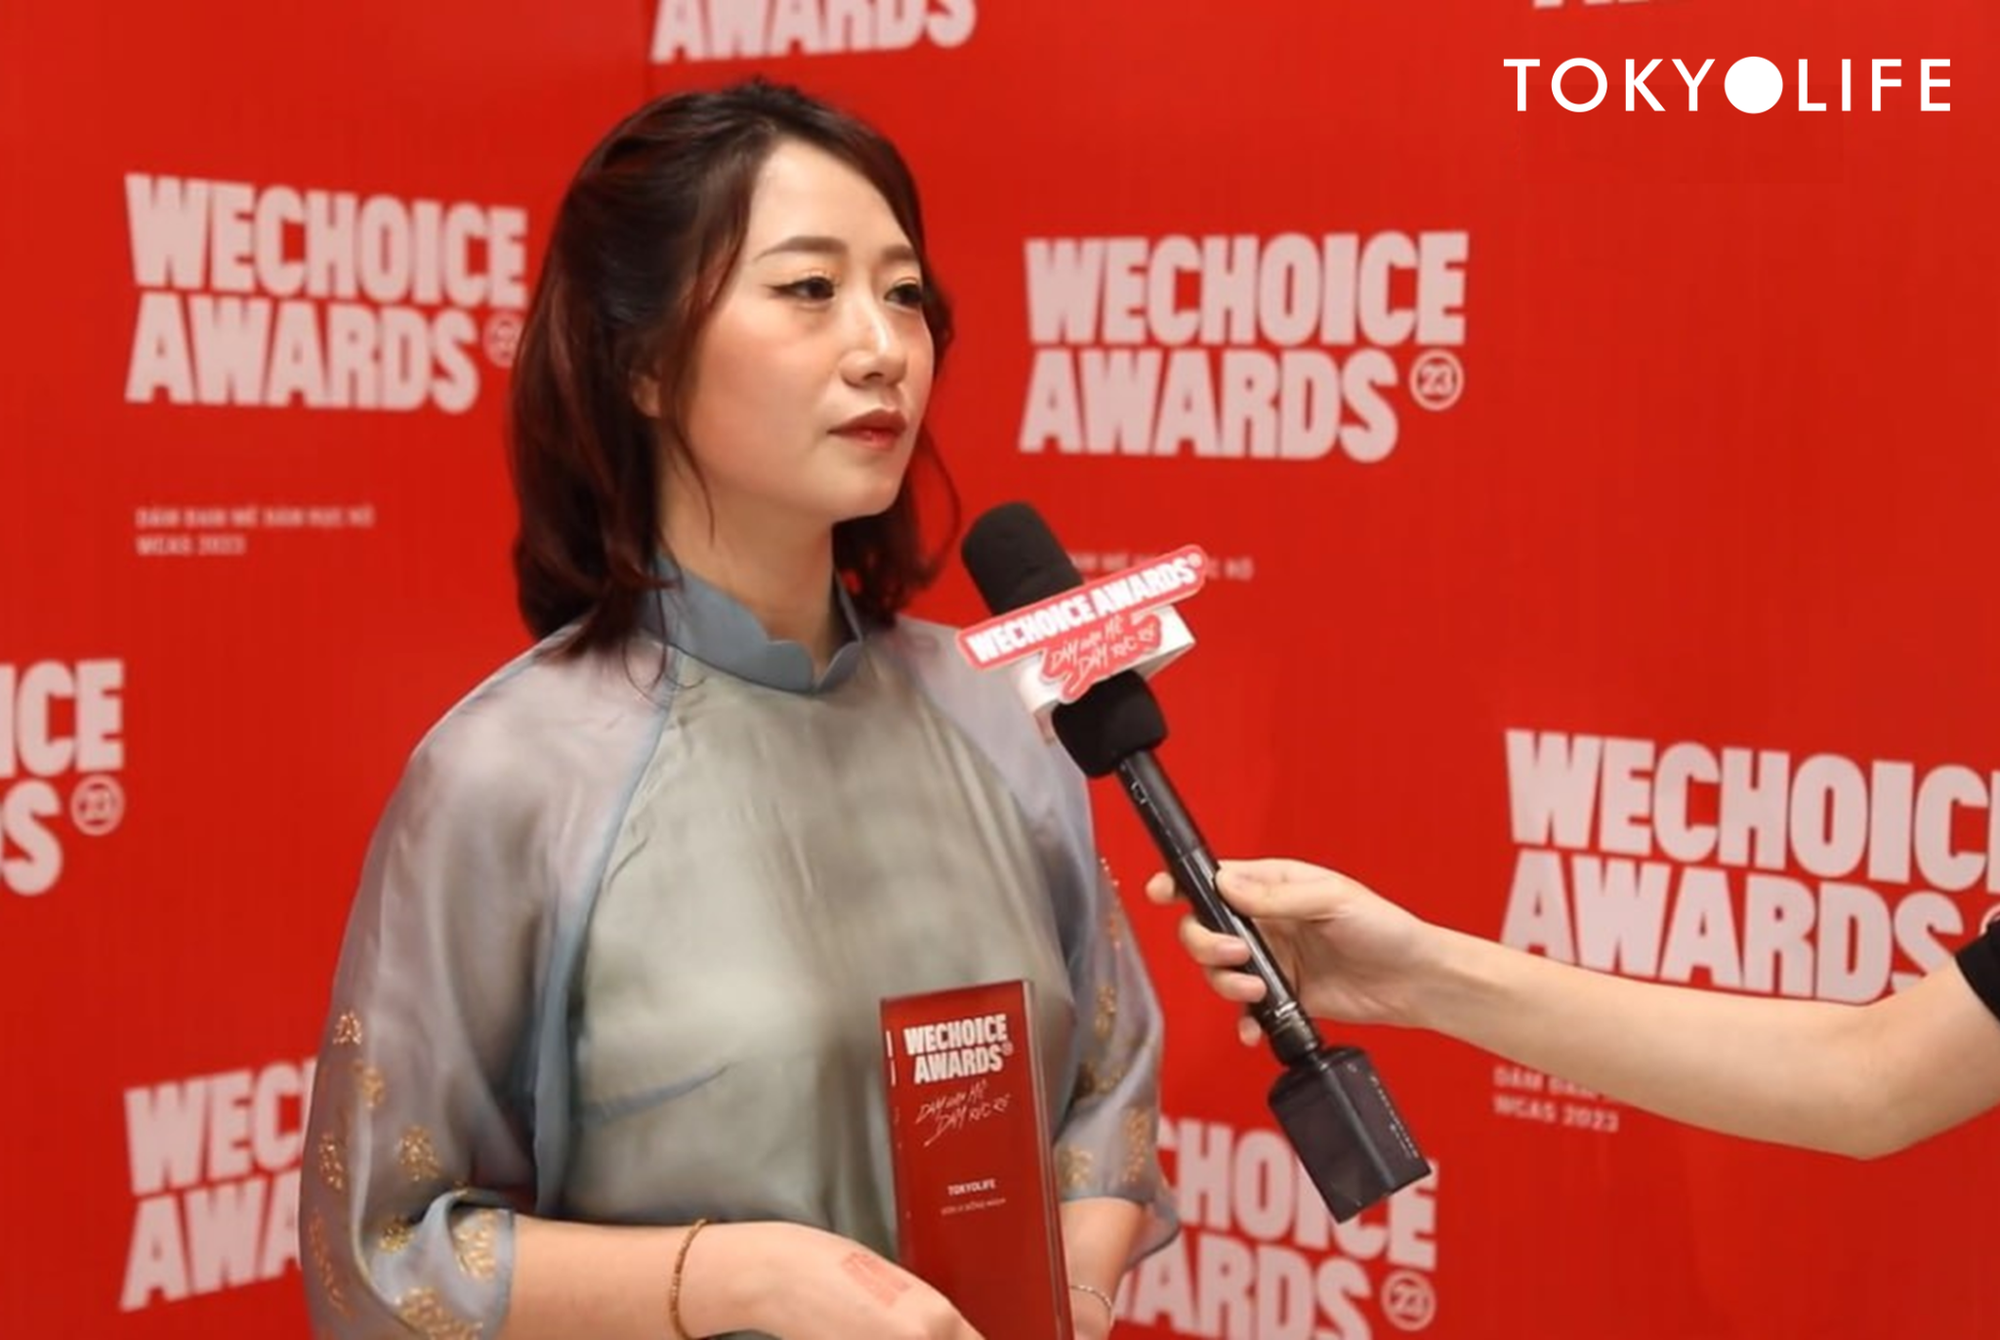 TokyoLife đồng hành cùng WeChoice Awards: Mọi hành động tử tế đều cần được tôn vinh và lan tỏa - Ảnh 2.